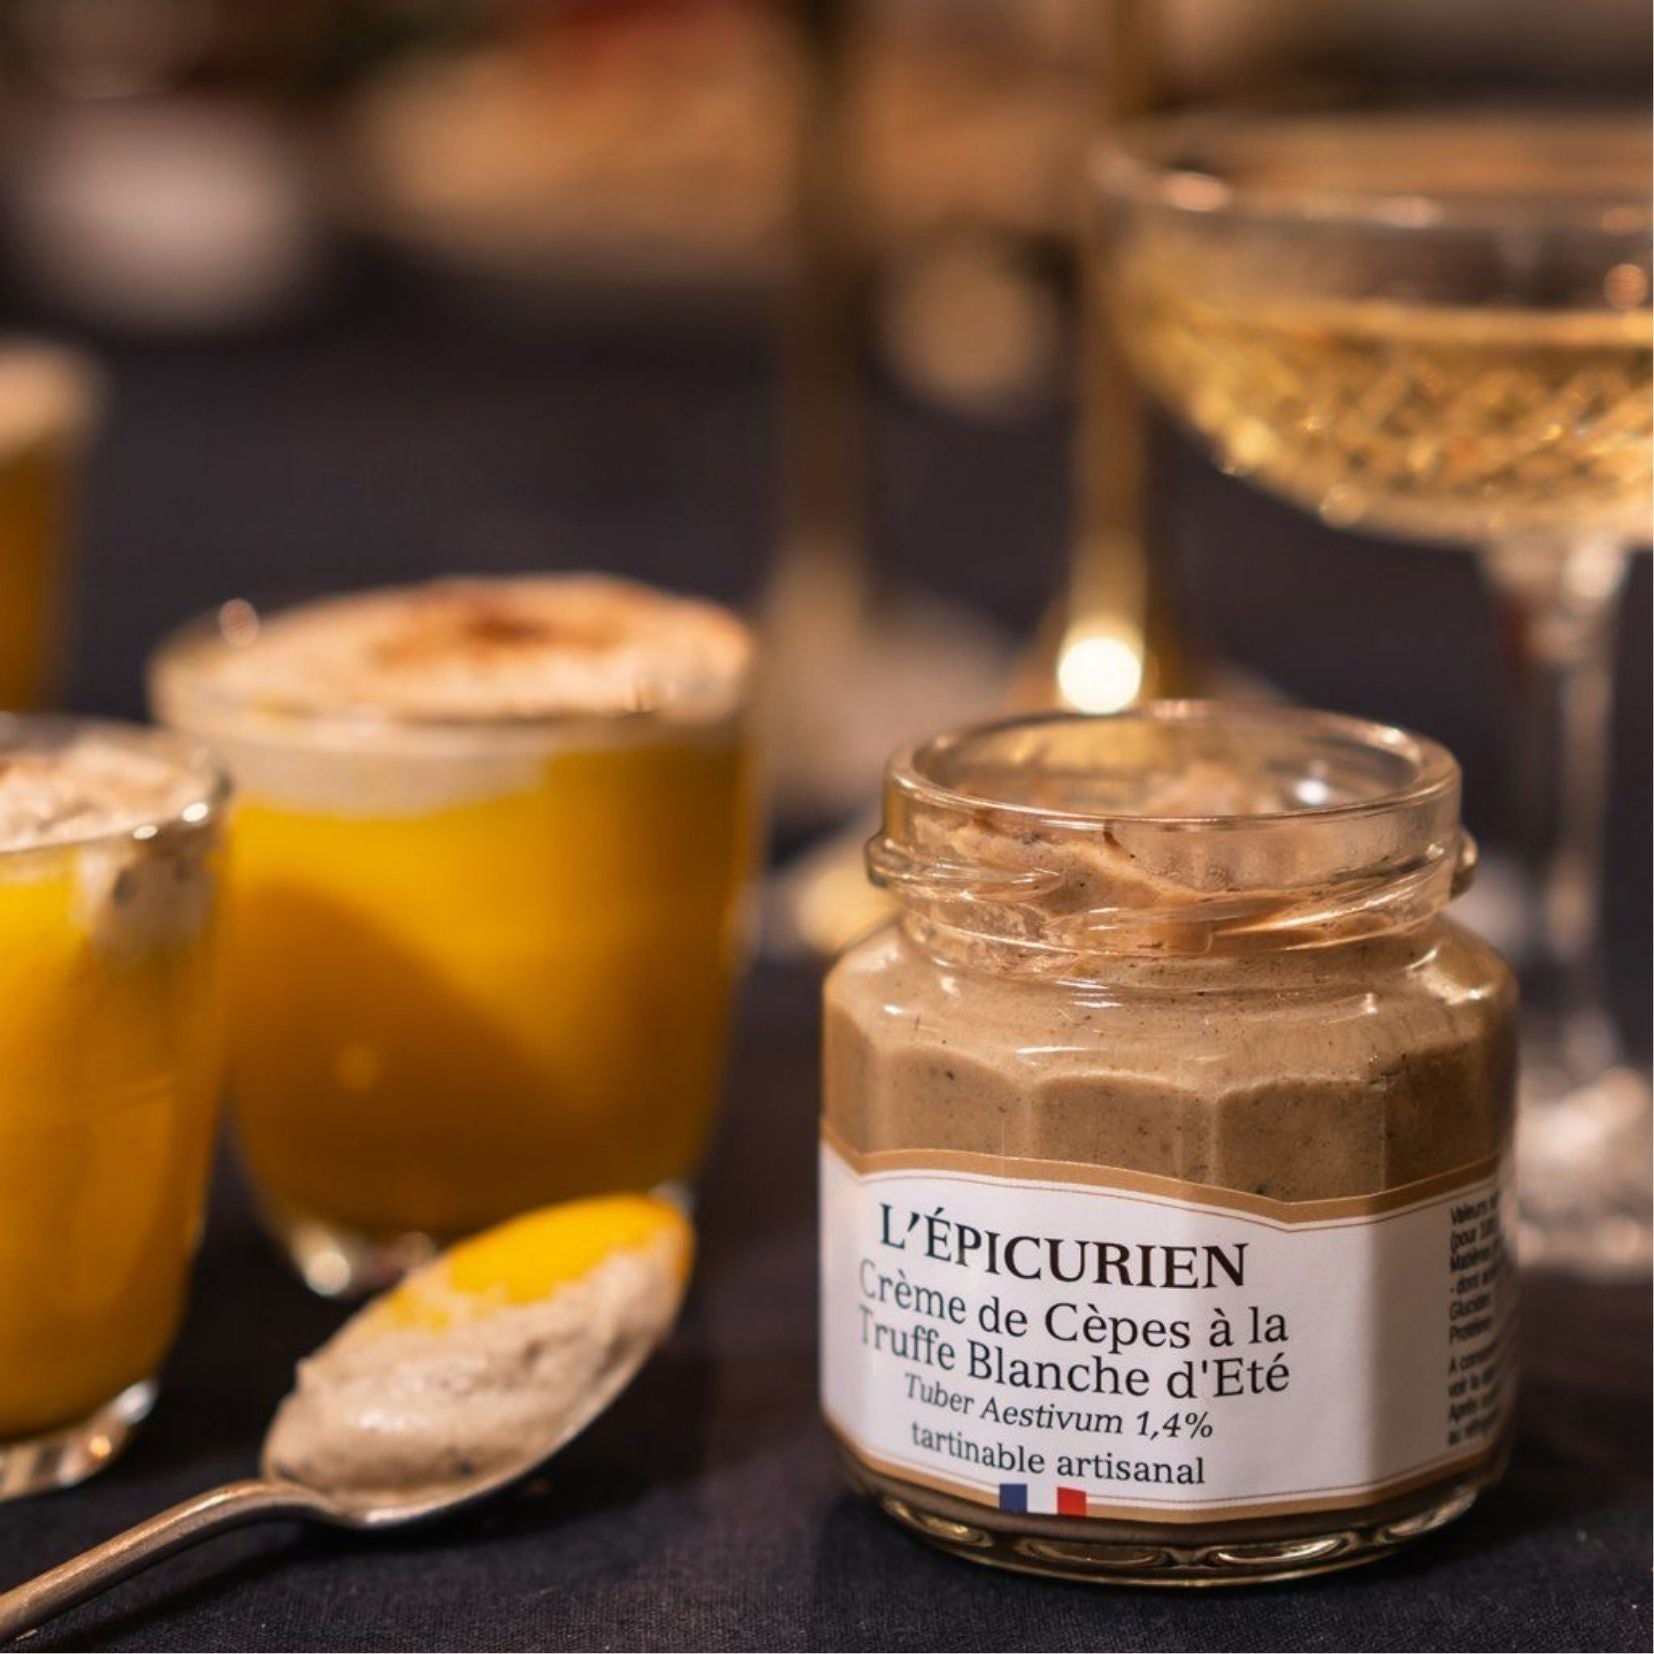 Coffret crème de truffe, huile truffe et champignons secs – LAUMONT FRANCE